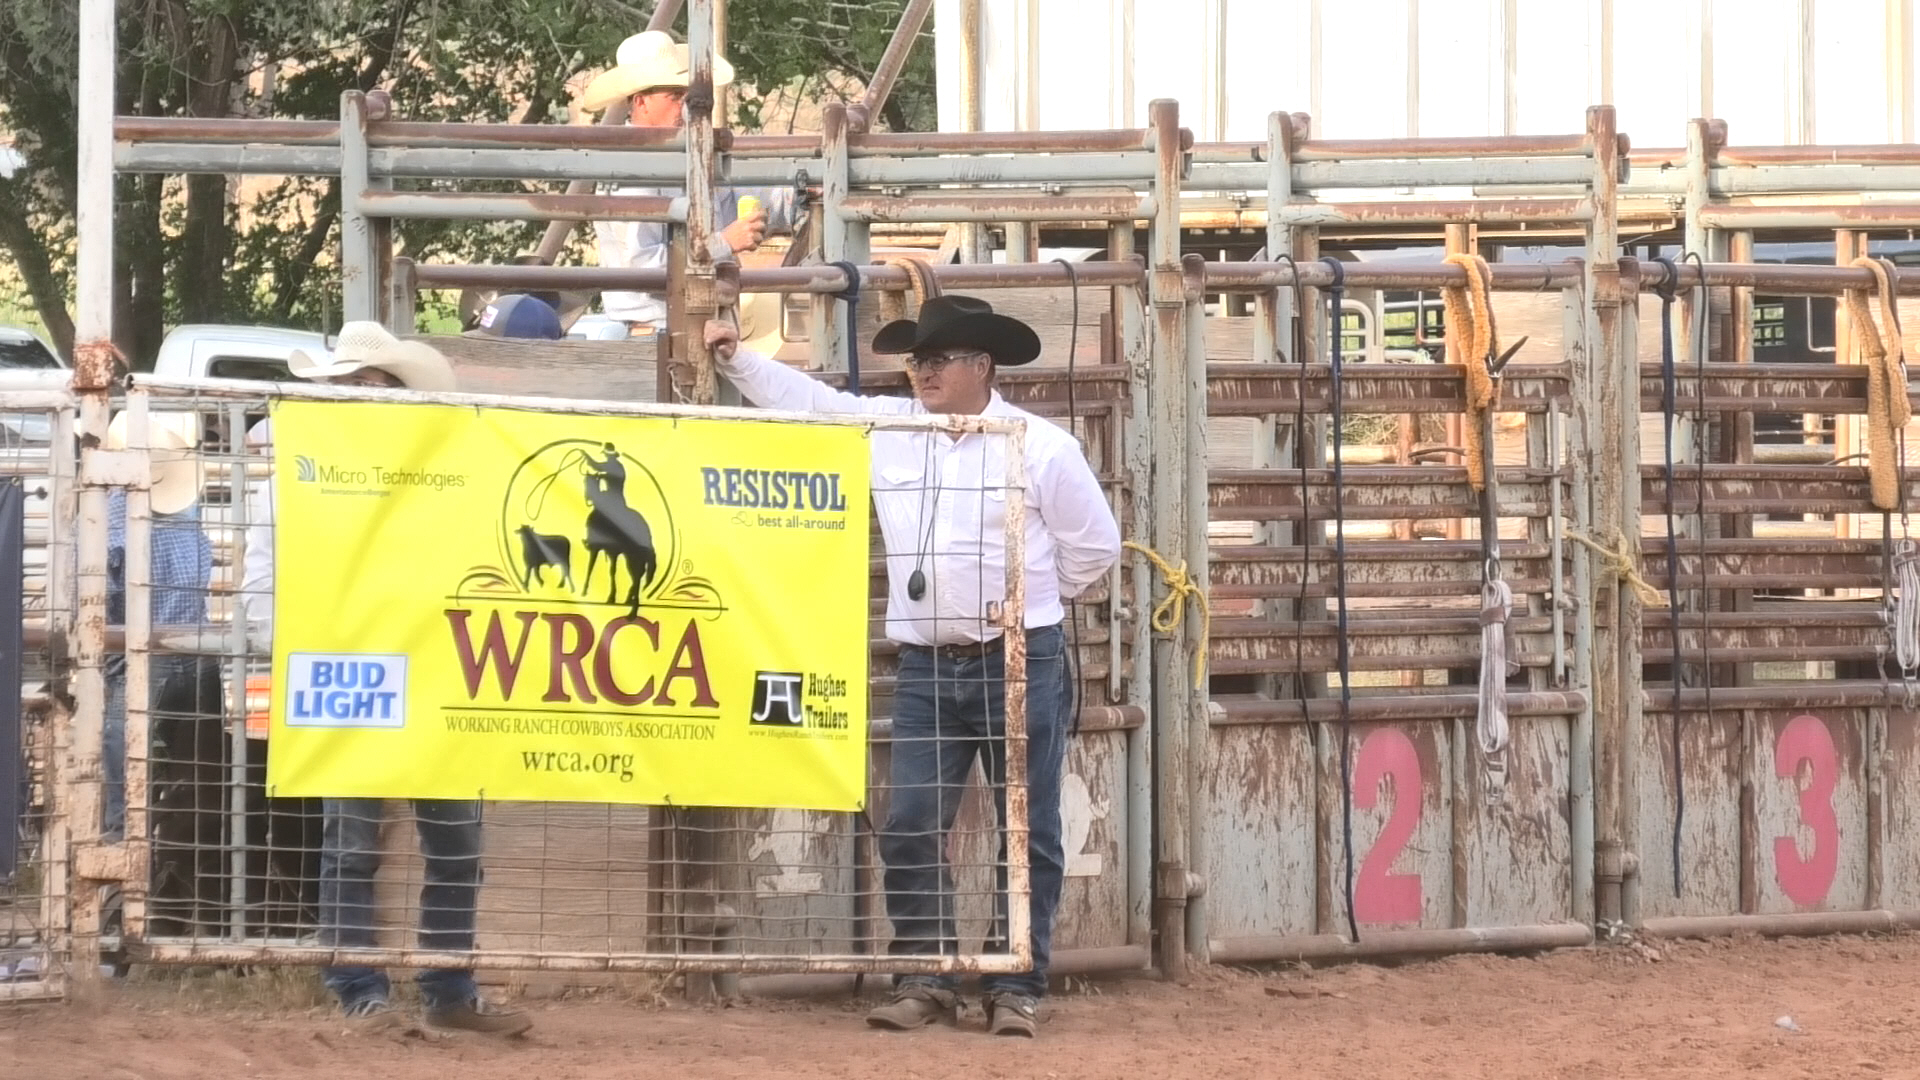 WRCA Ranch Rodeo